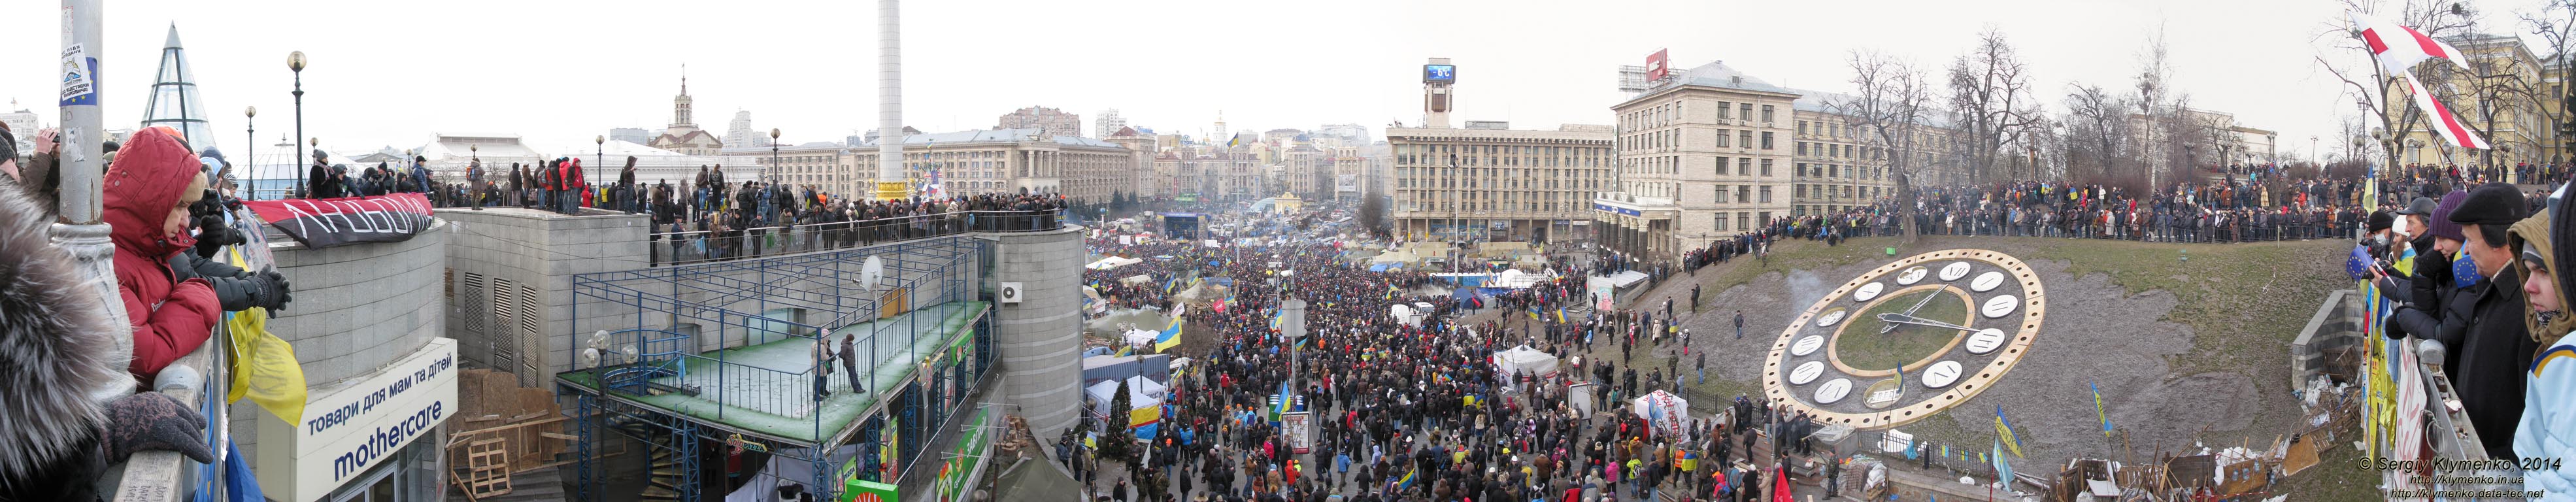 Фото Киева. Площадь Независимости, вид со стороны улицы Институтская (панорама ~180°). «Евромайдан» 19 января 2014 года, около 12:20.